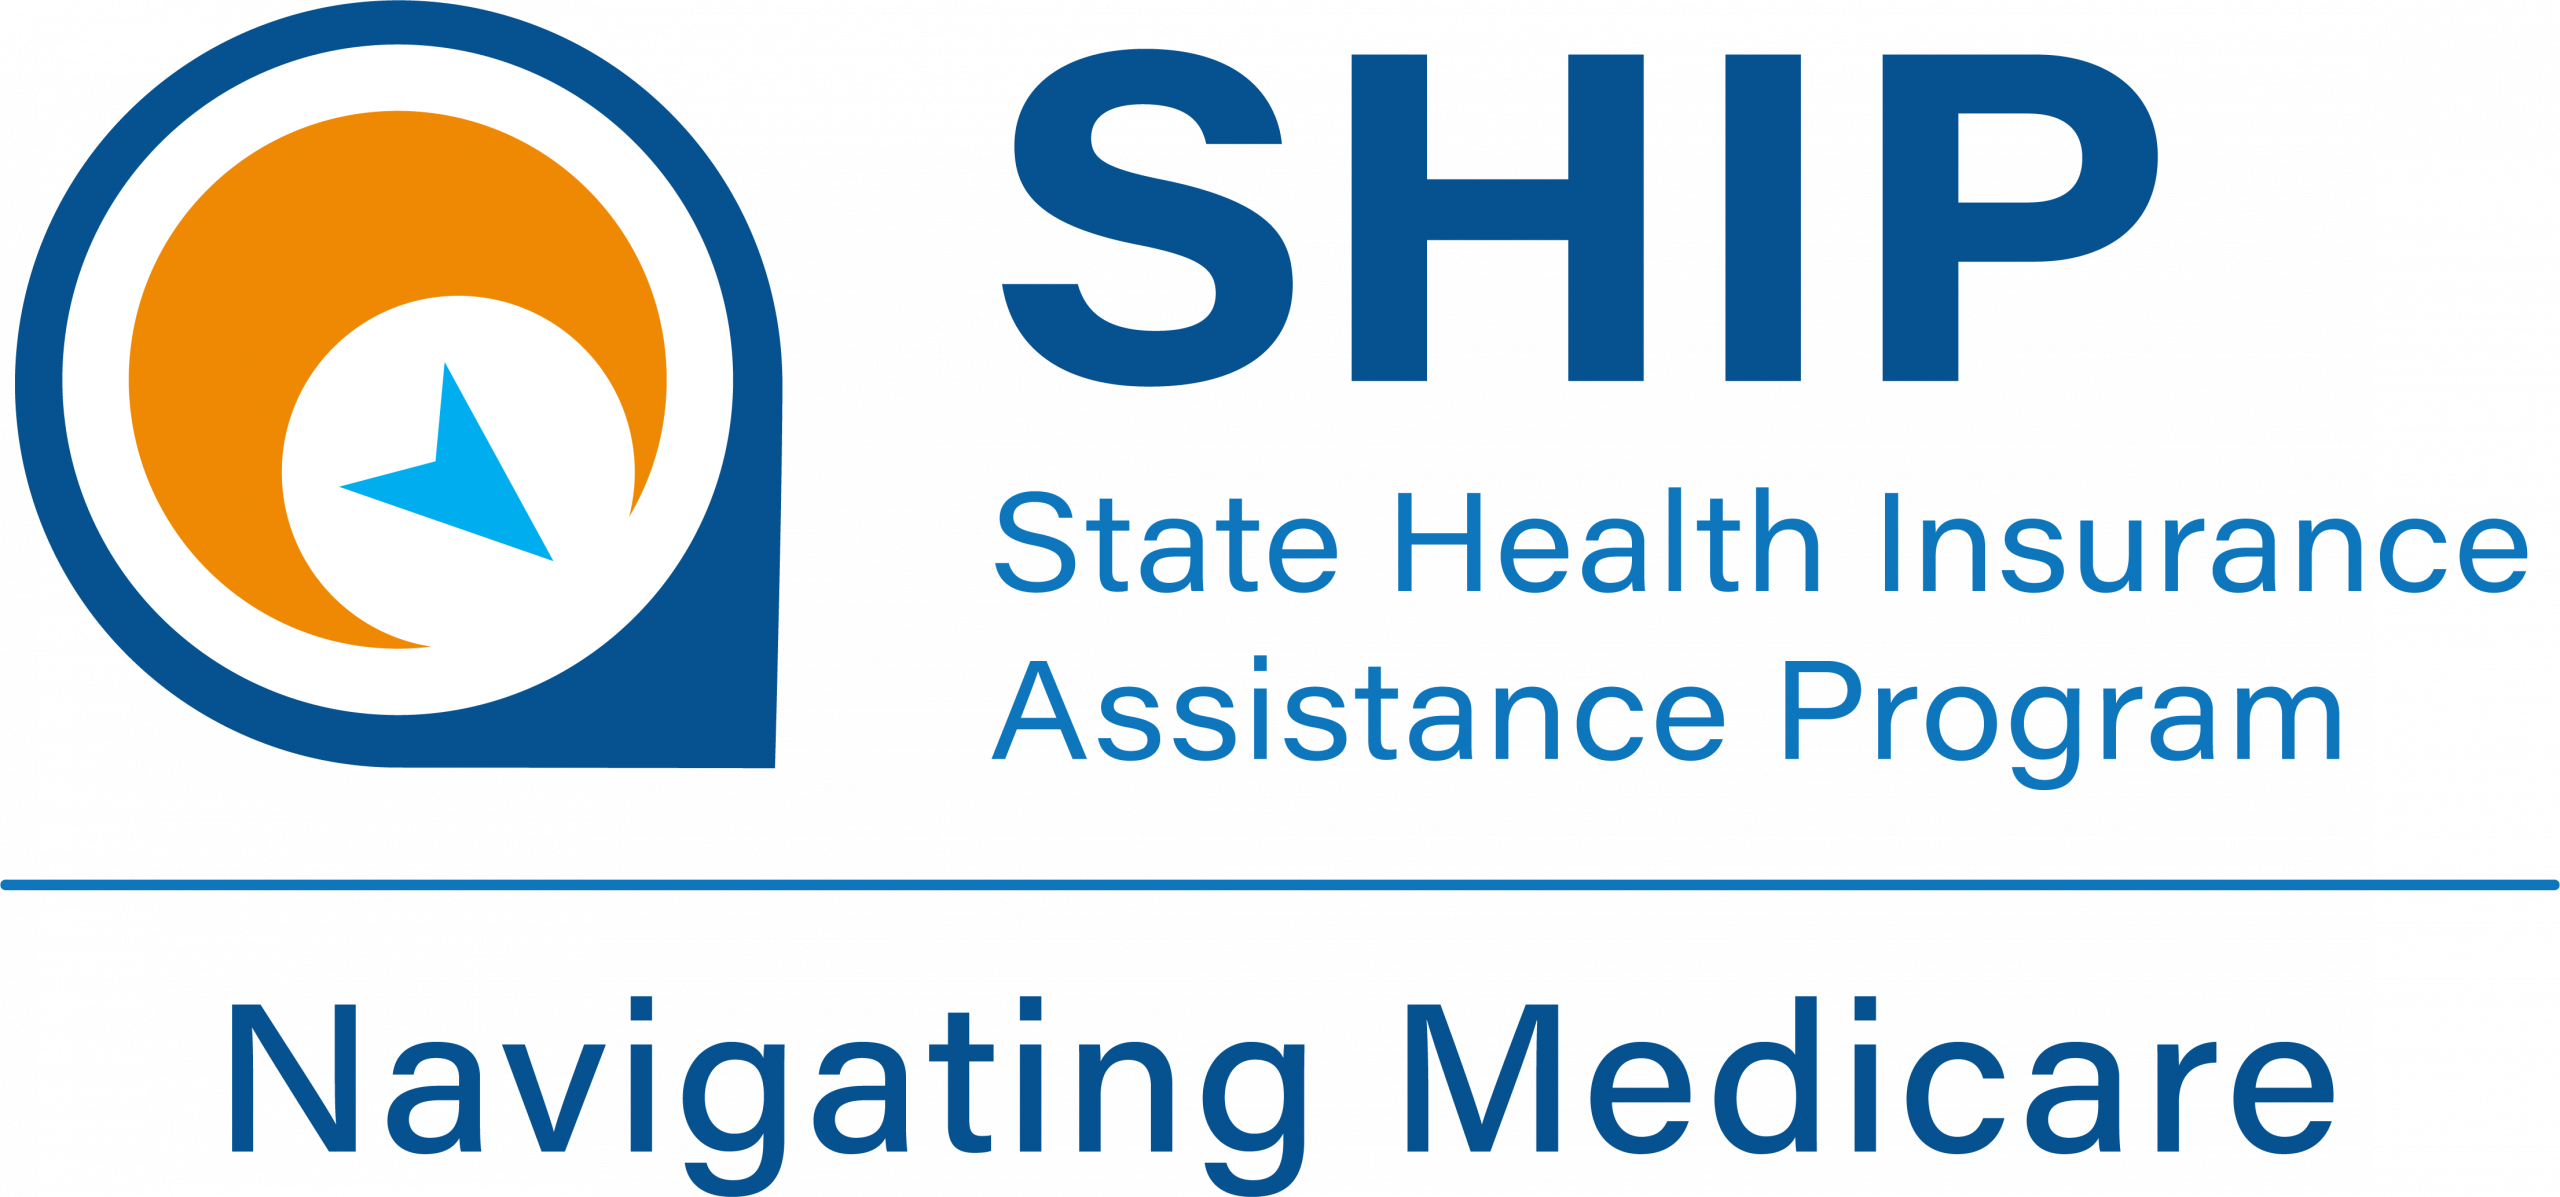 SHIP State Health Insurance Assistance Program - Navigating Medicare